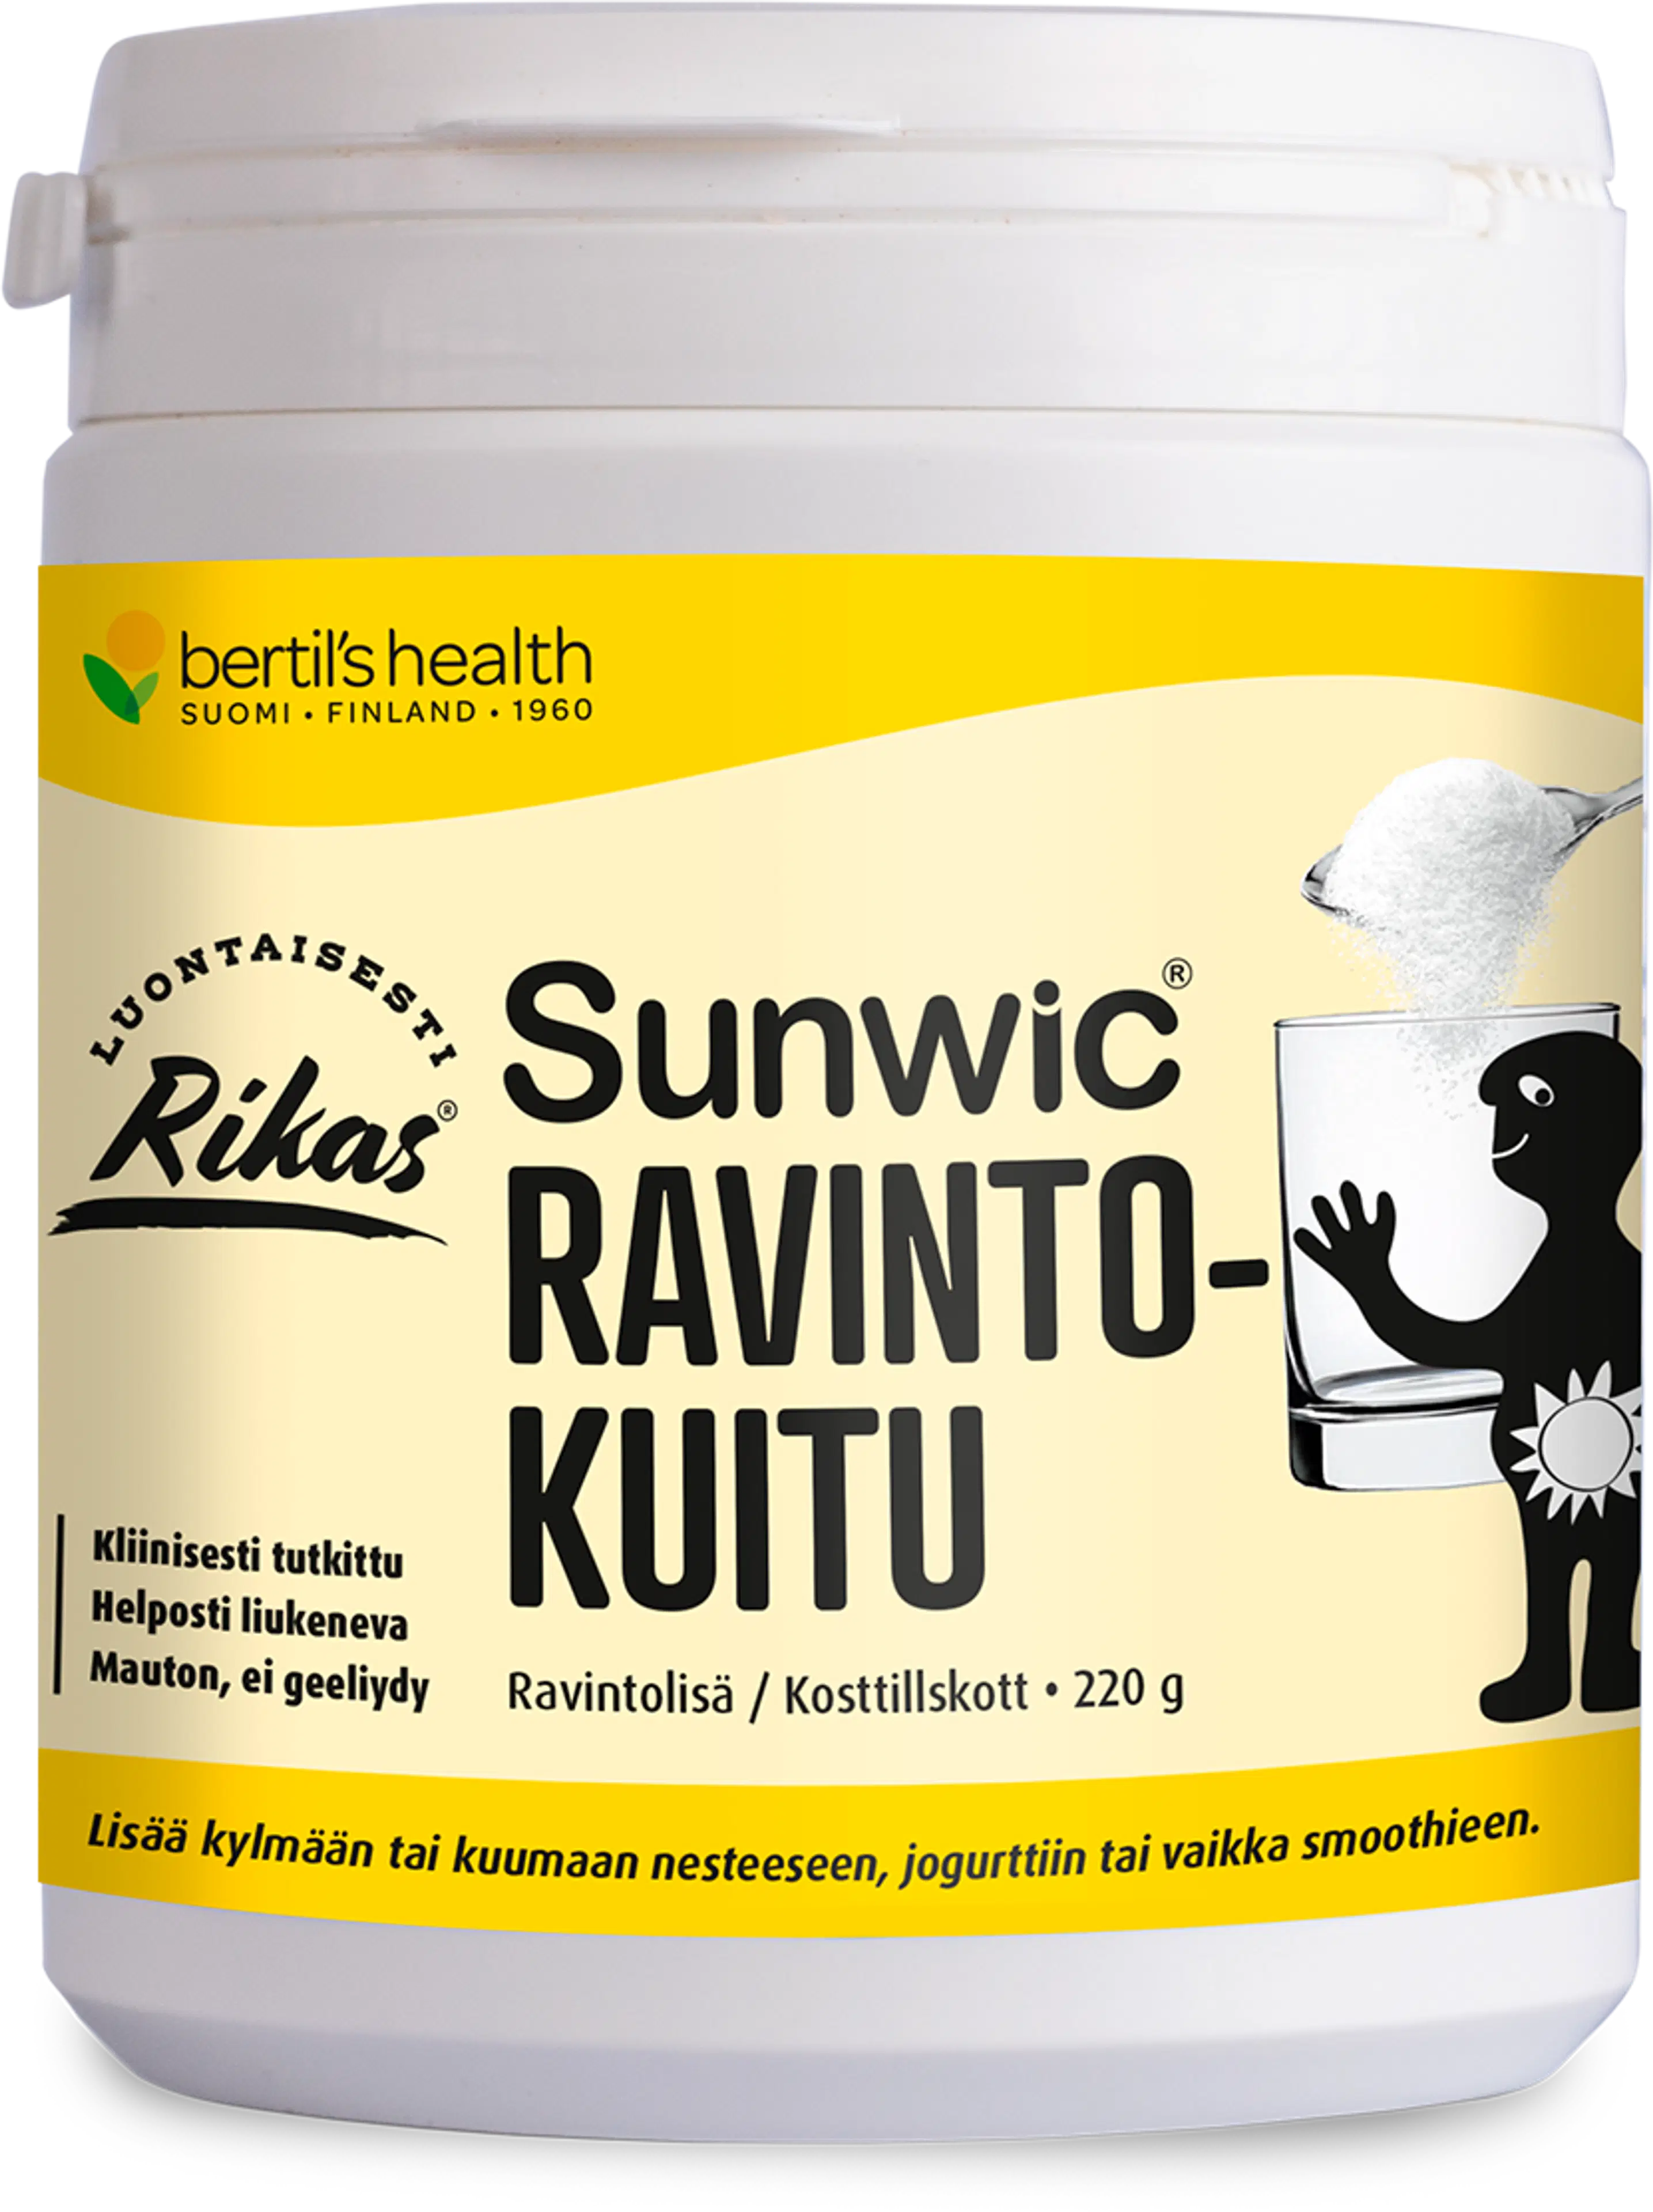 bertil´s health Rikas Sunwic ravintokuitu 200 g